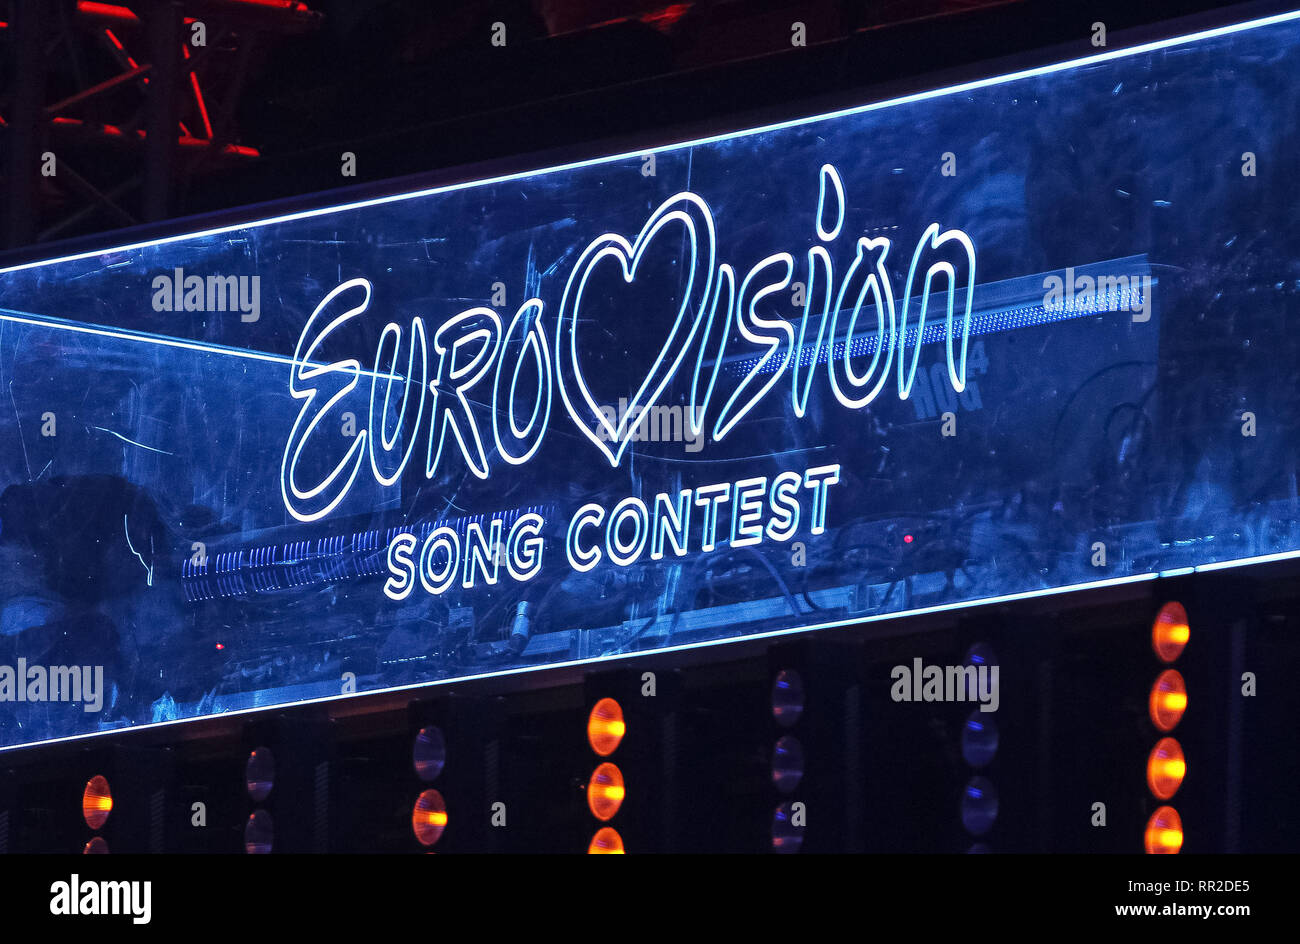 Logo du Concours Eurovision de la chanson est visible pendant l'Eurovision Song Contest 2019 (ESC) final de sélection nationale à Kiev. La chanteuse ukrainienne sera MARUV représente l'Ukraine au cours de l'Eurovision 2019 contest à Tel-Aviv en mai 2019. Banque D'Images